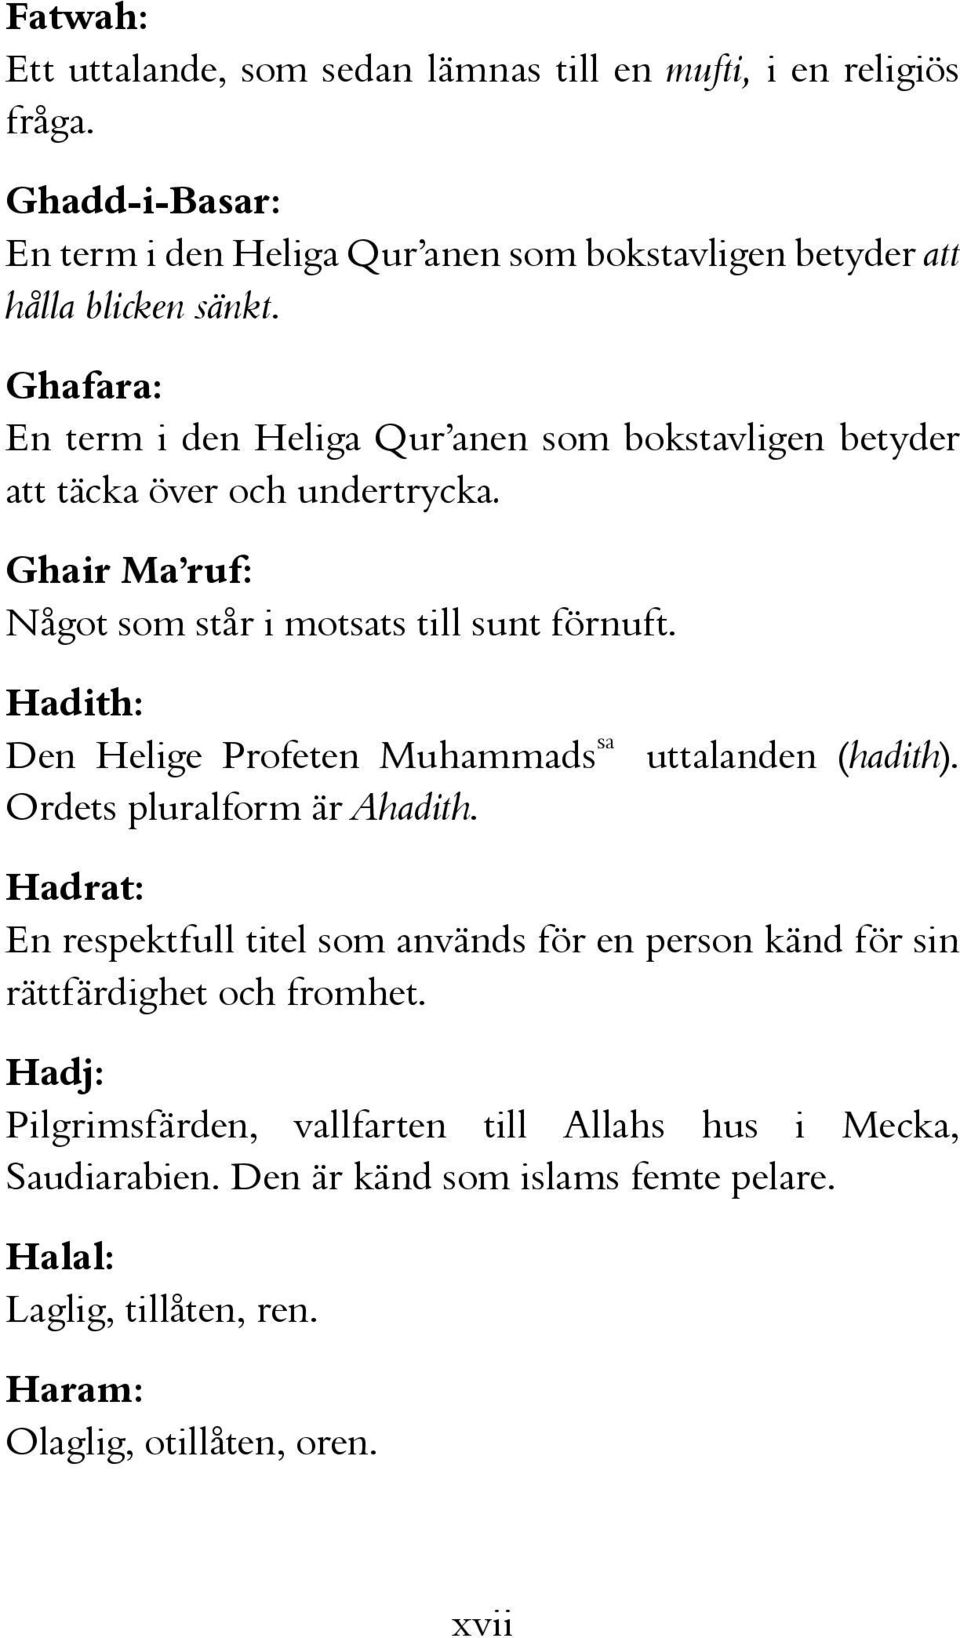 Hadith: Den Helige Profeten Muhammads sa Ordets pluralform är Ahadith. uttalanden (hadith).